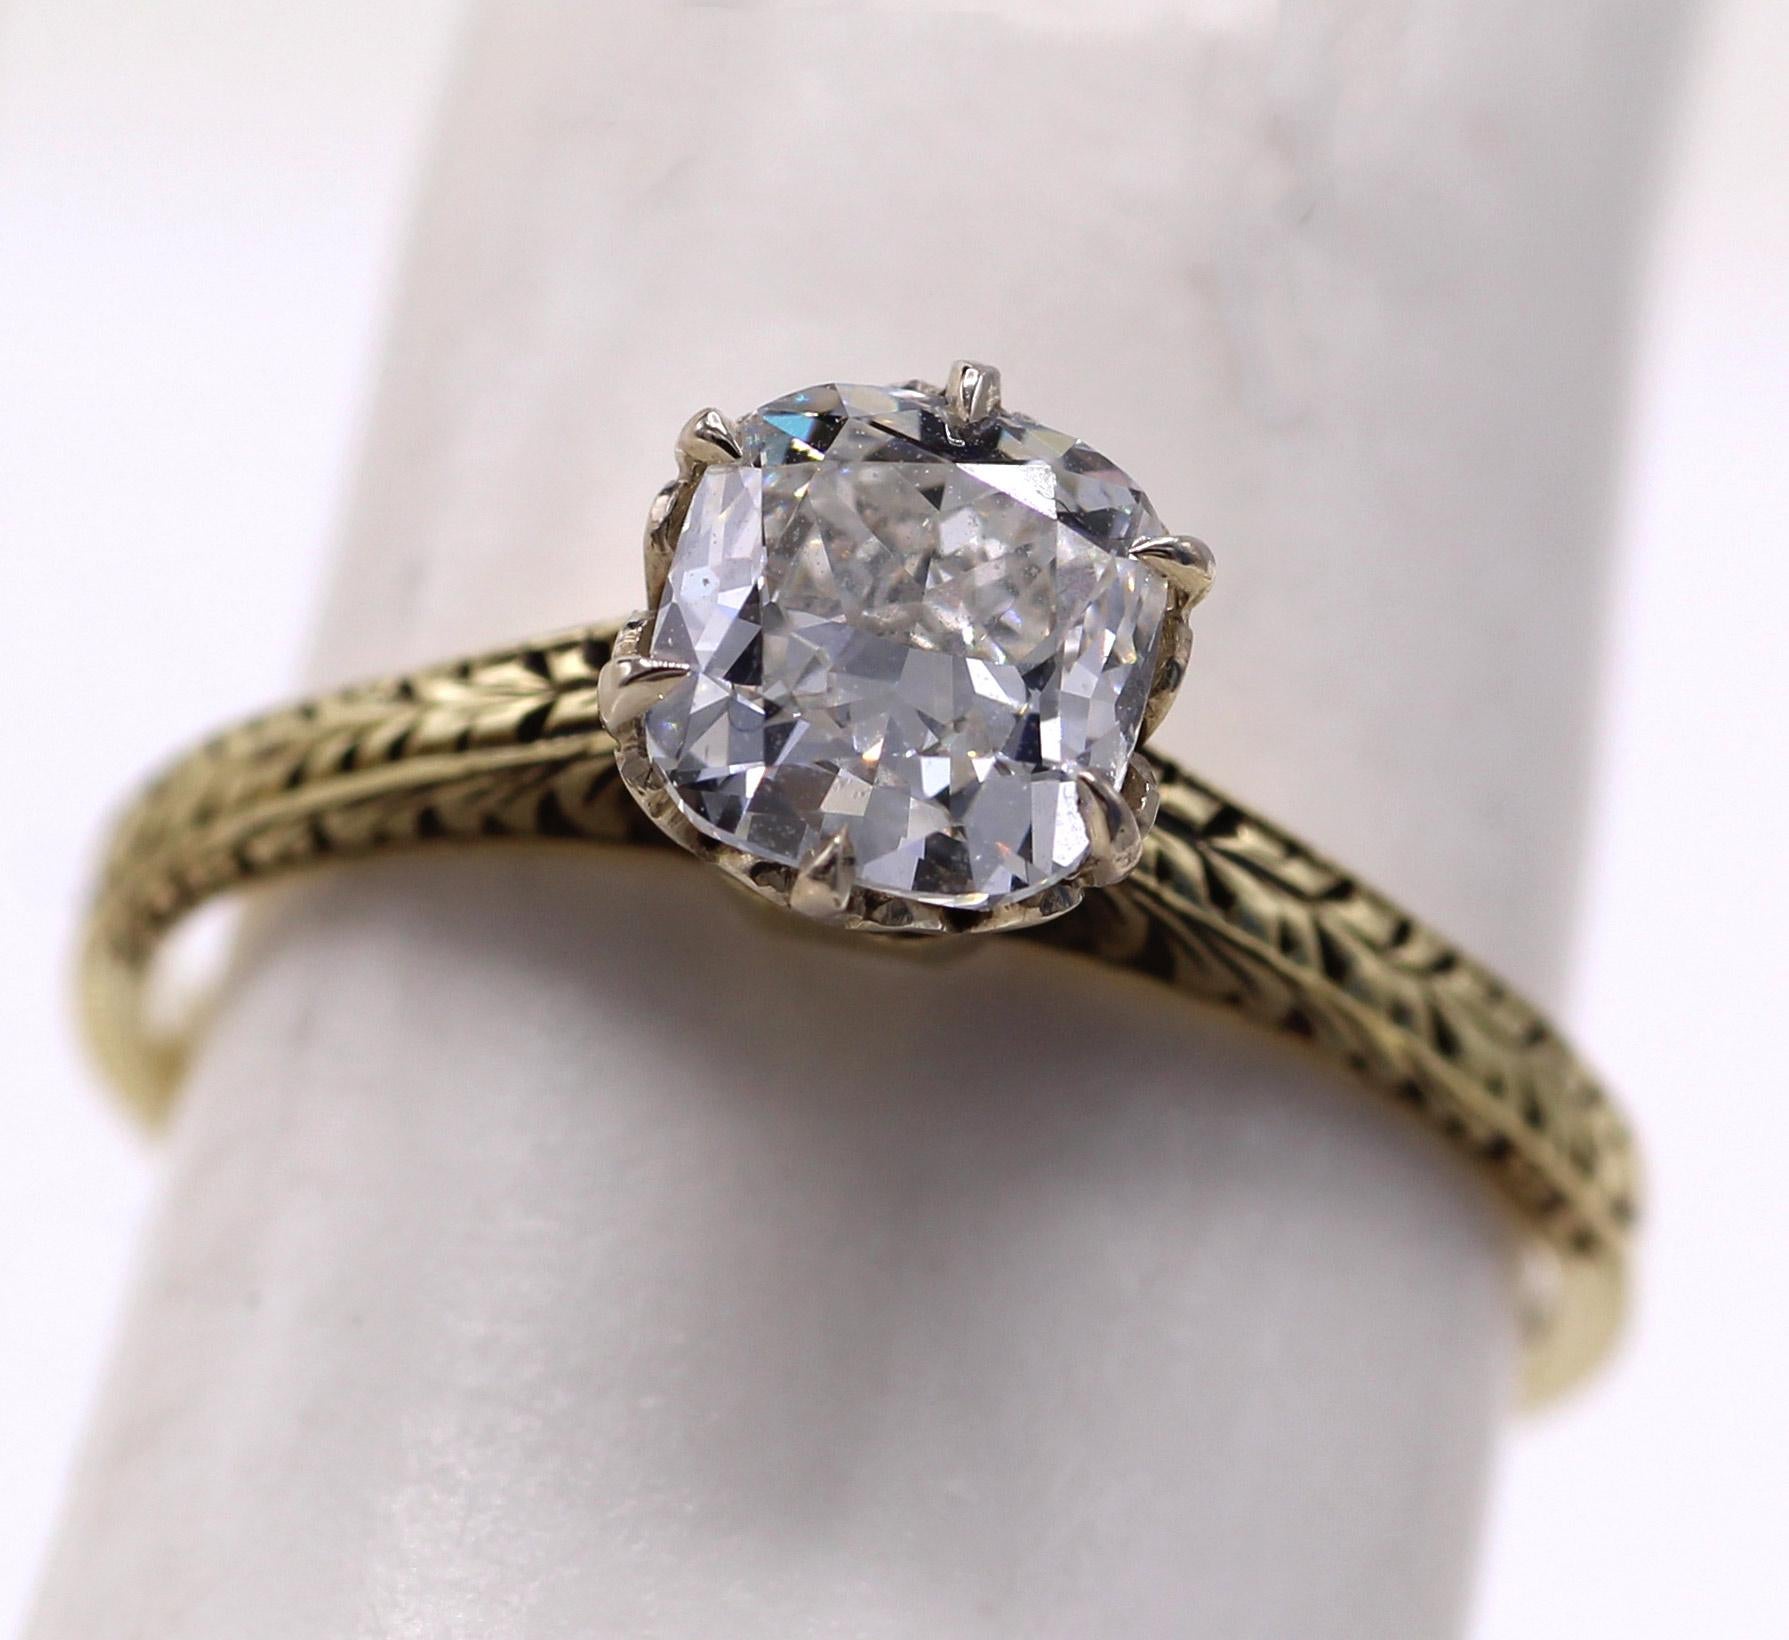 Cette charmante bague de fiançailles datant d'environ 1936 présente un diamant coussin d'un blanc éclatant et vif pesant 1,10 carats, accompagné d'un rapport du GIA le classant G VS1. Fixée par 6 griffes d'aigle sur une galerie blanche ornée et une